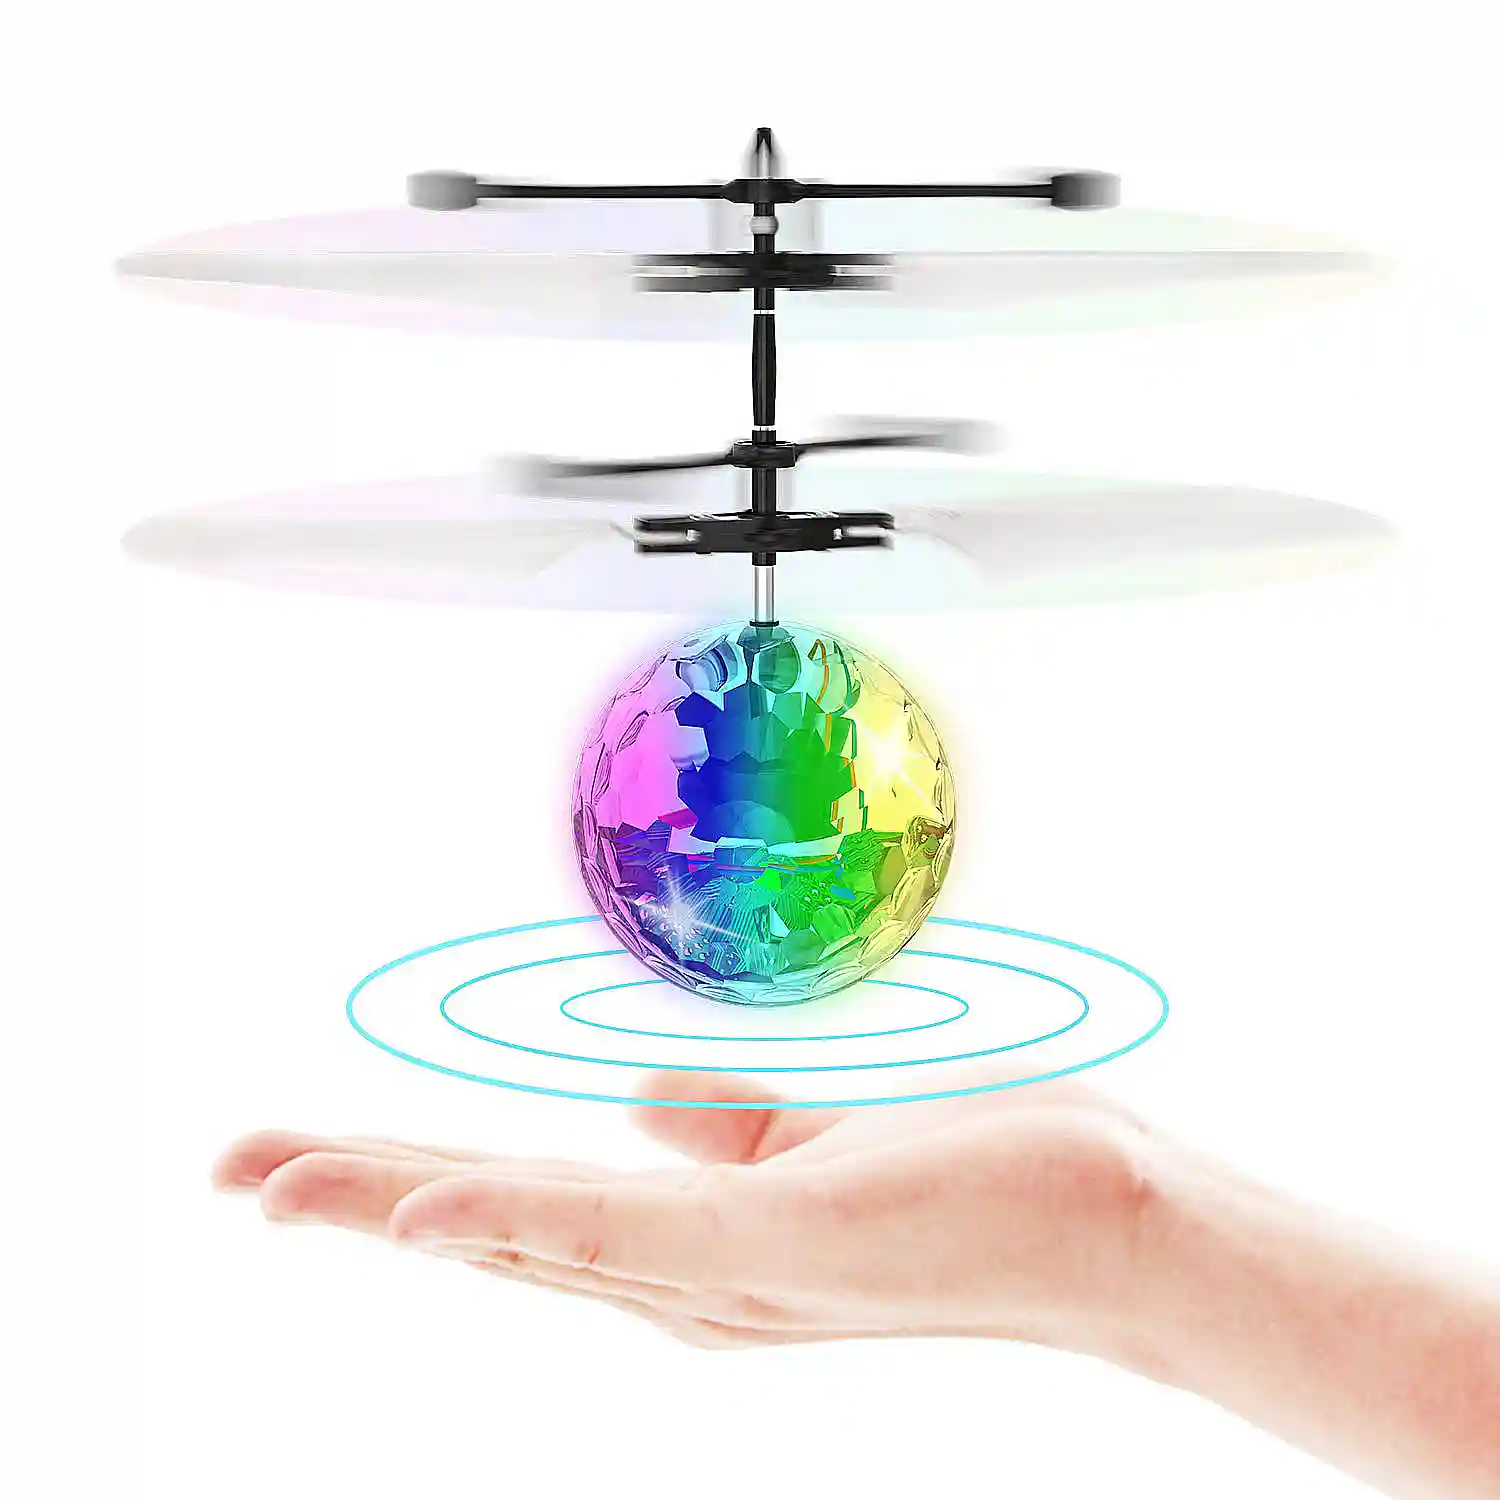 Bola voladora inteligente que cambia de color de cristal con luz